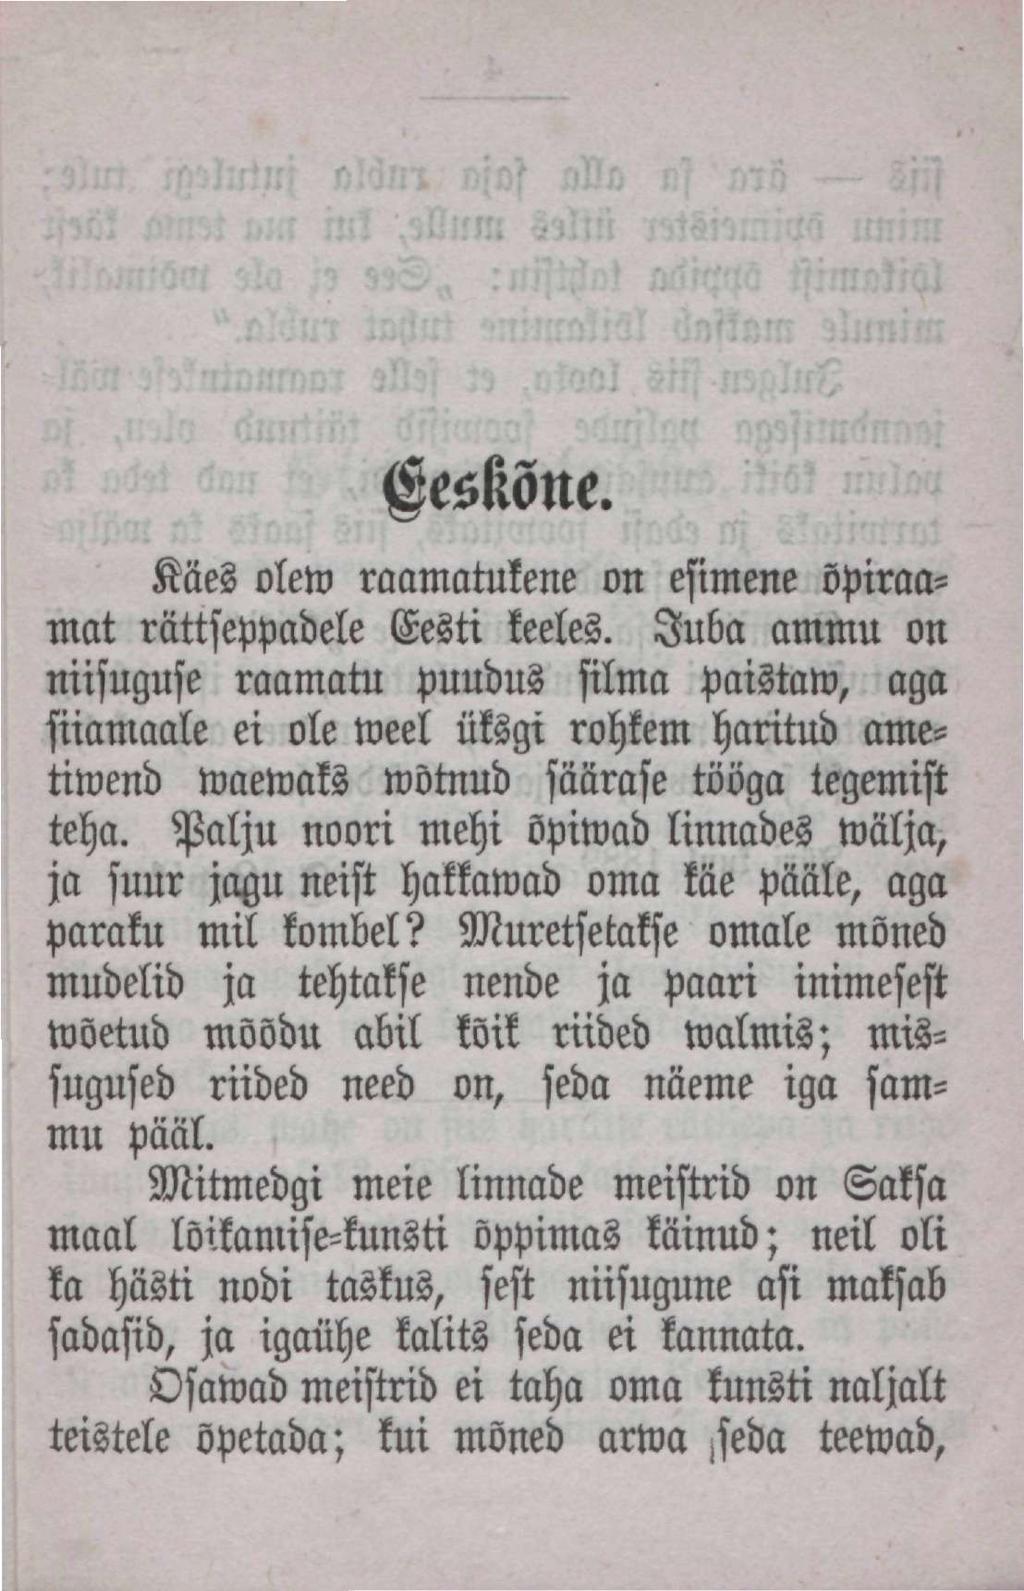 OesKõne. Käes olew raamatukene on esimene õpiraamat rättseppadele Eesti keeles. Juba ammu on niisuguse raamaw puudus silma paistan?